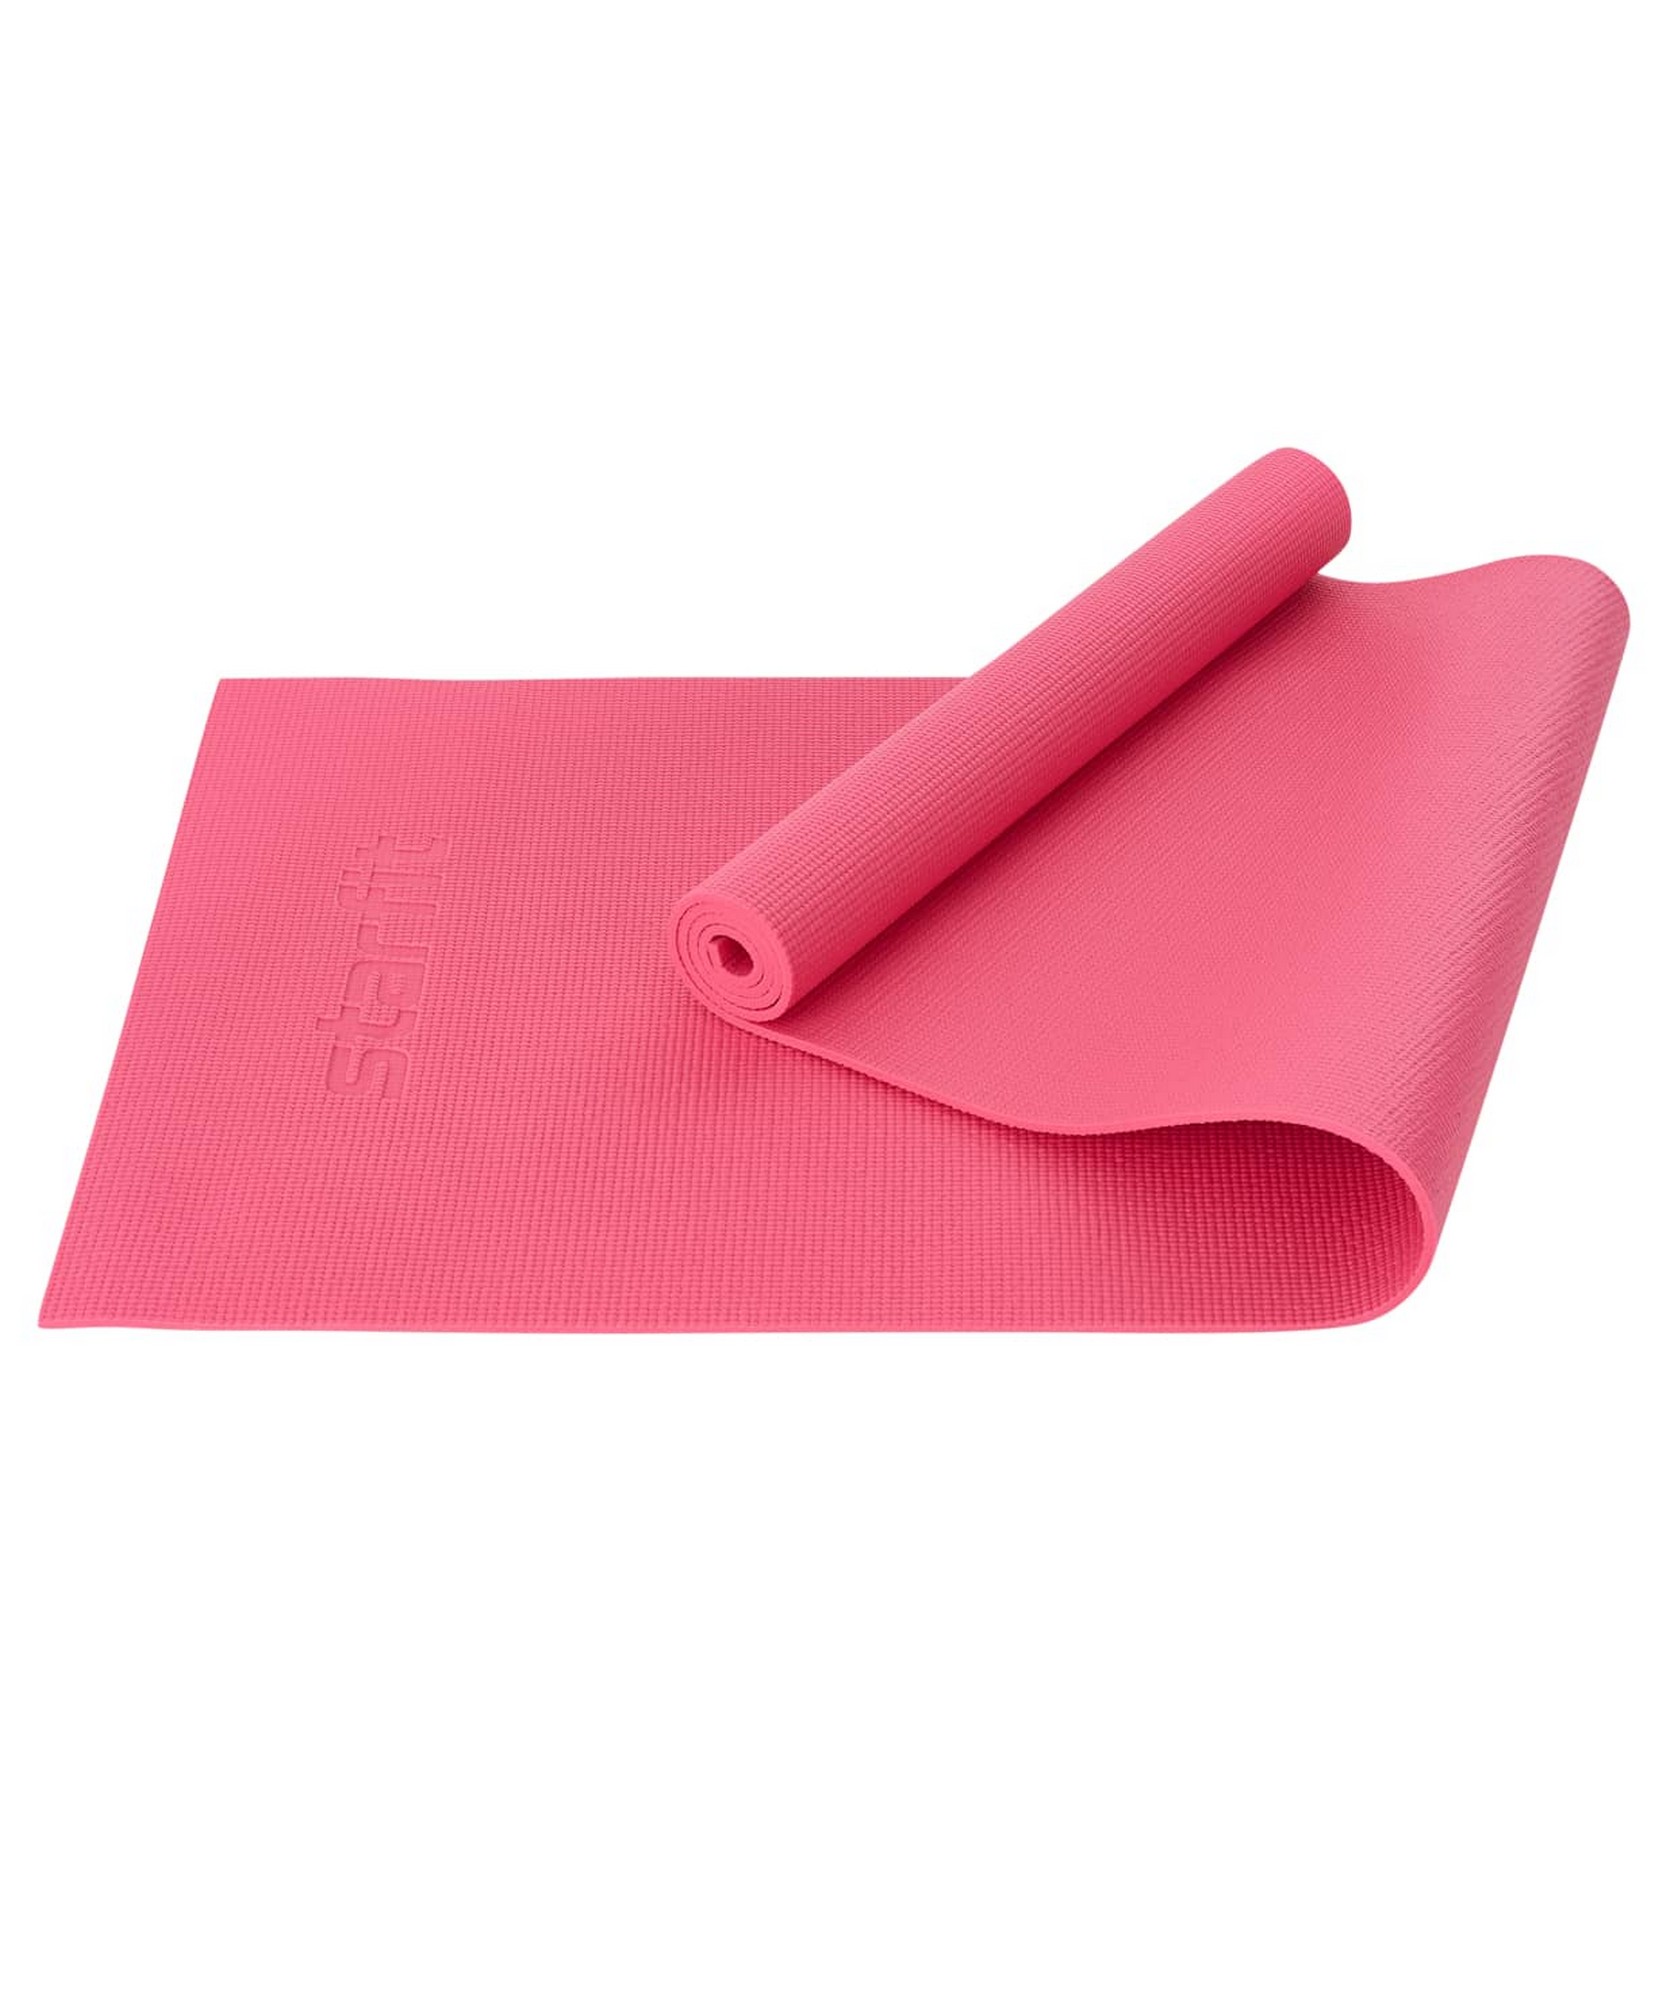 Купить Коврик для йоги и фитнеса 183x61x0,6см Star Fit PVC FM-101 розовый,